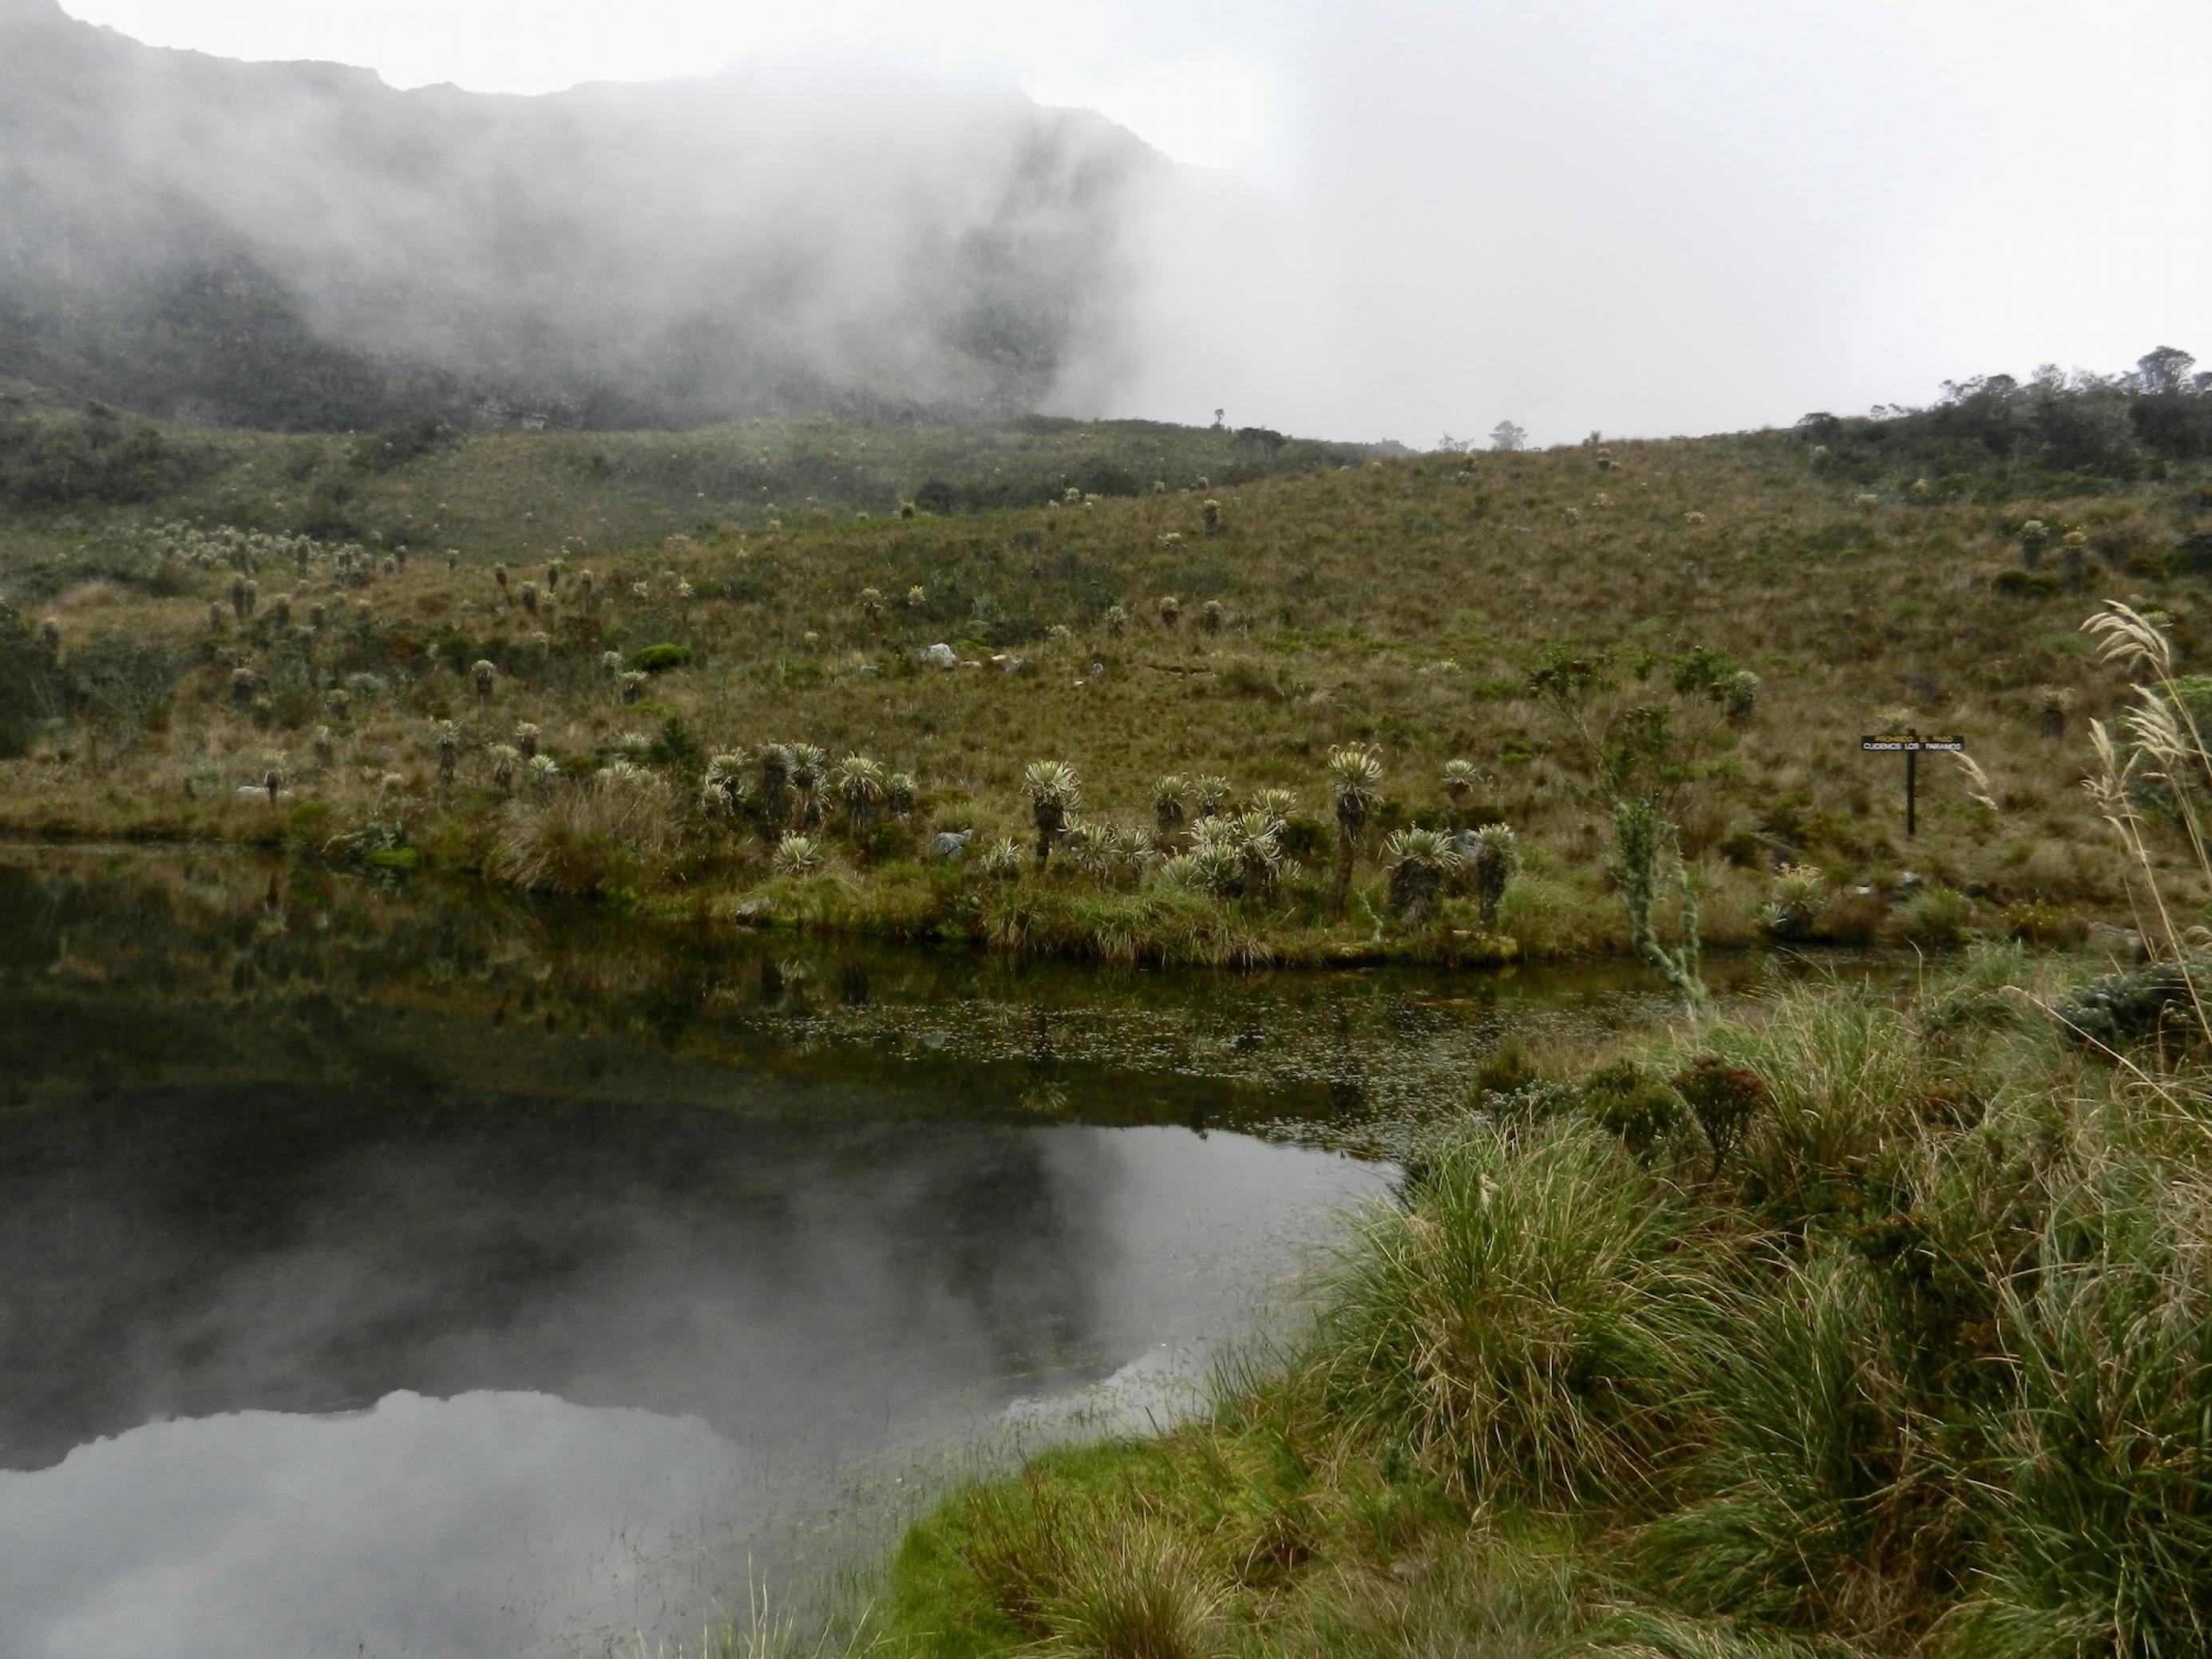 See mit dunklem Wasser hoch auf einem Berg. Um ihn ist eine Landschaft mit niedriger Vegetation, aus der Schopfrosettenbäumchen herausstechen. Eine Nebelwand bewegt sich auf den See zu.